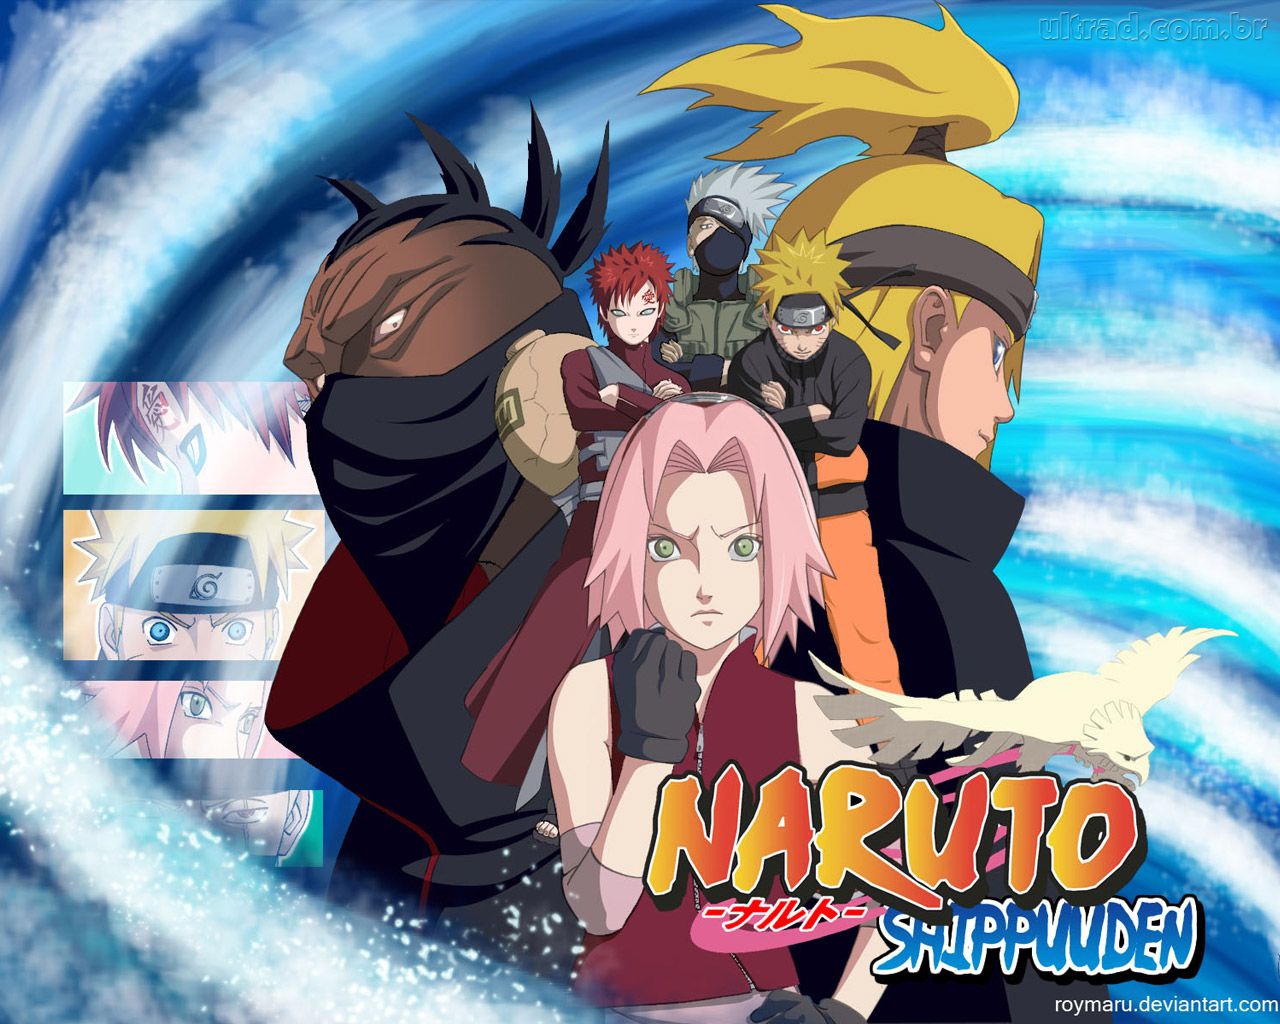 Naruto News: Naruto Shippuden - Dublagem é Iniciada no Brasil